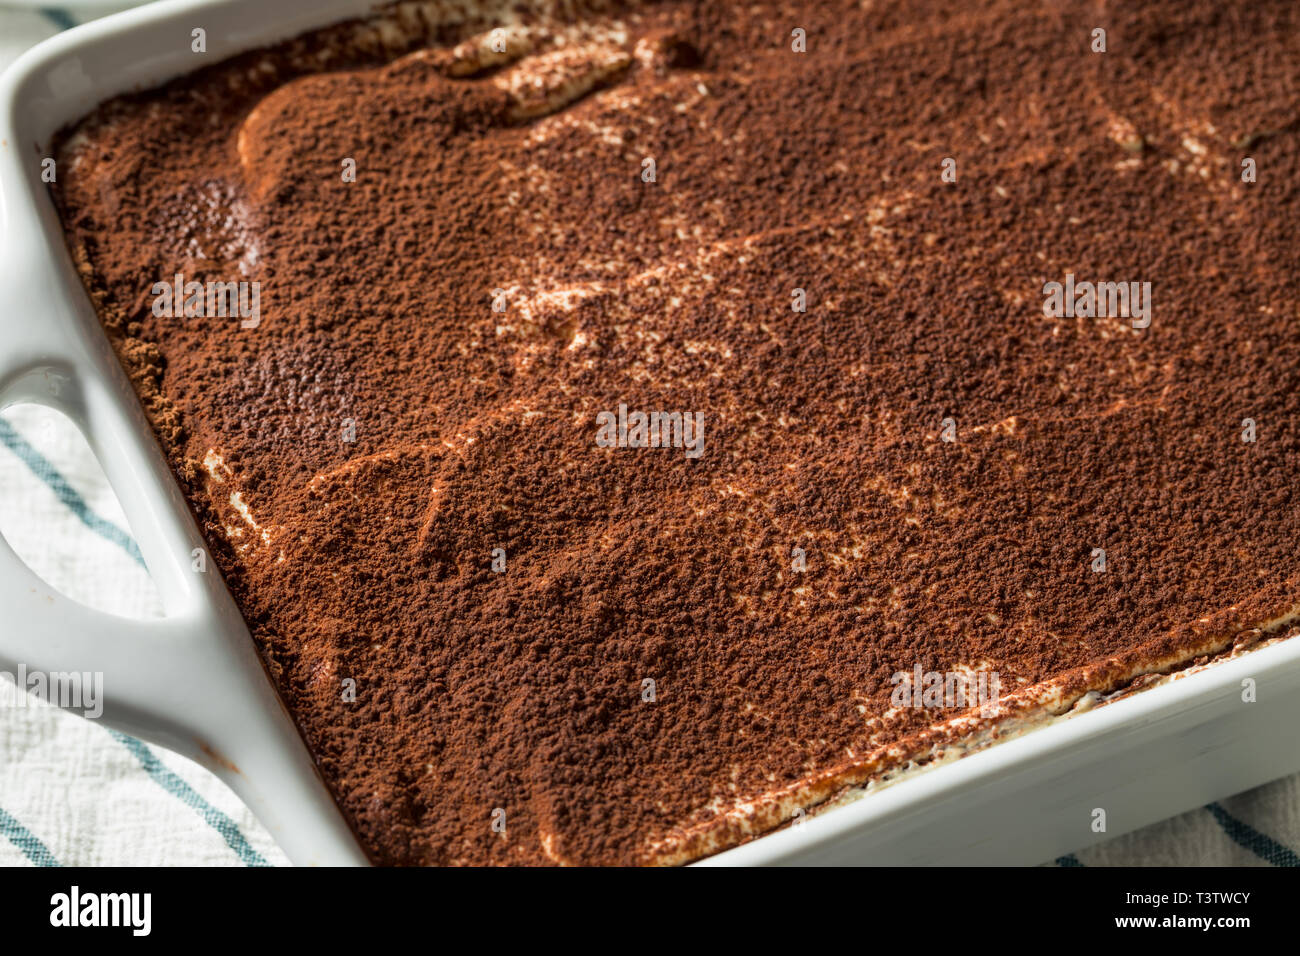 Dolce casalingo italiano dessert Tiramisu con polvere di cacao Foto Stock